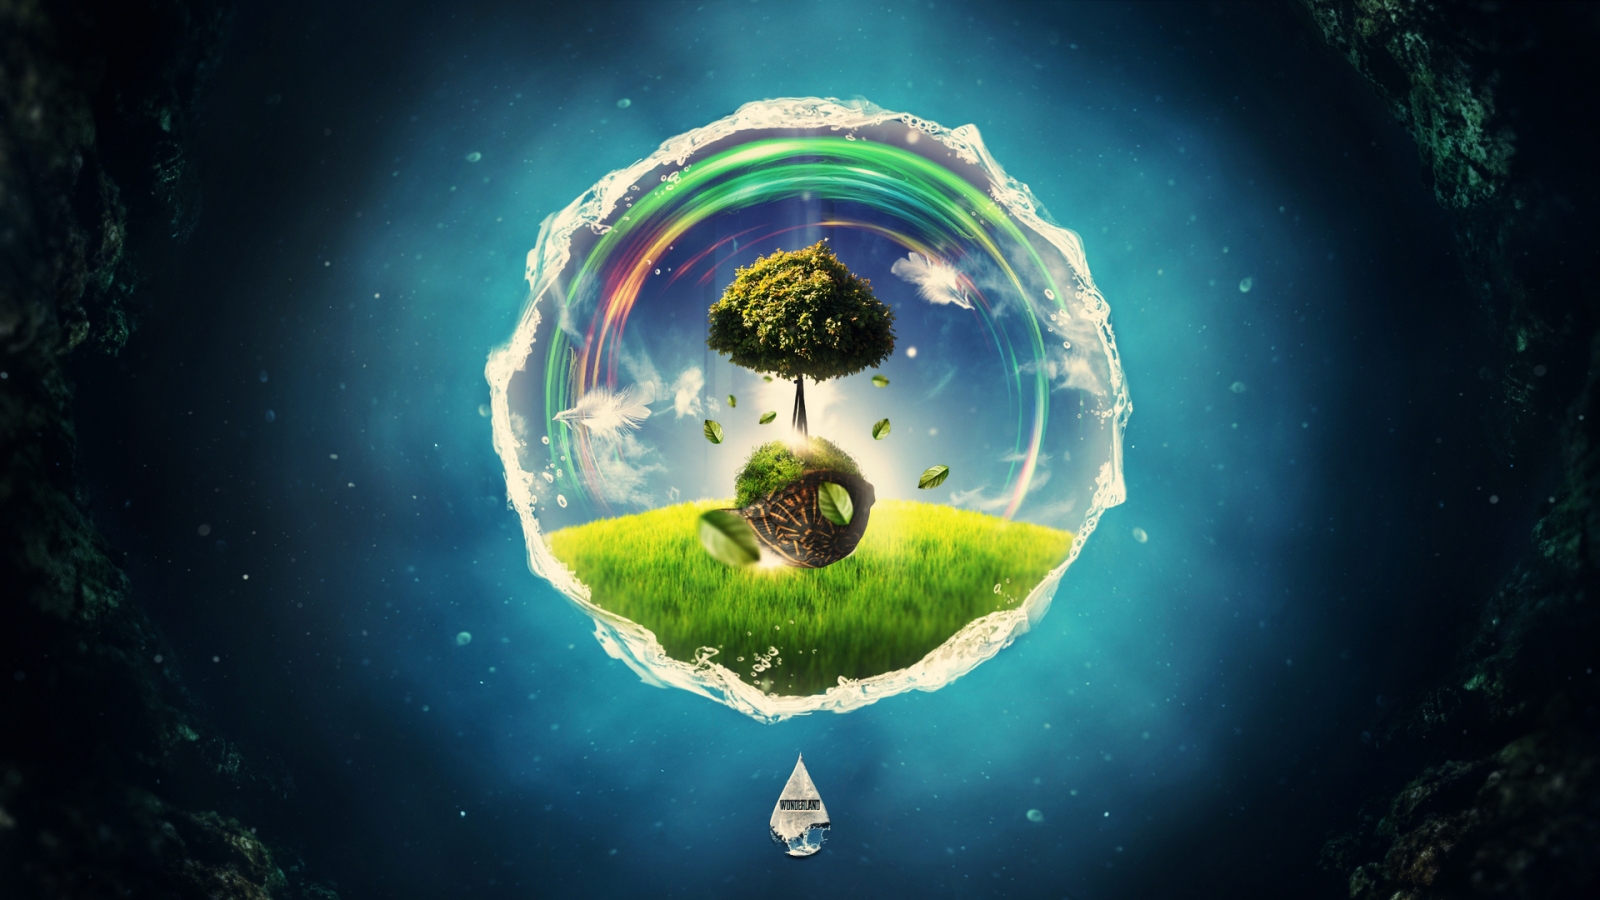 World Fantasy Tree HD Wallpaper